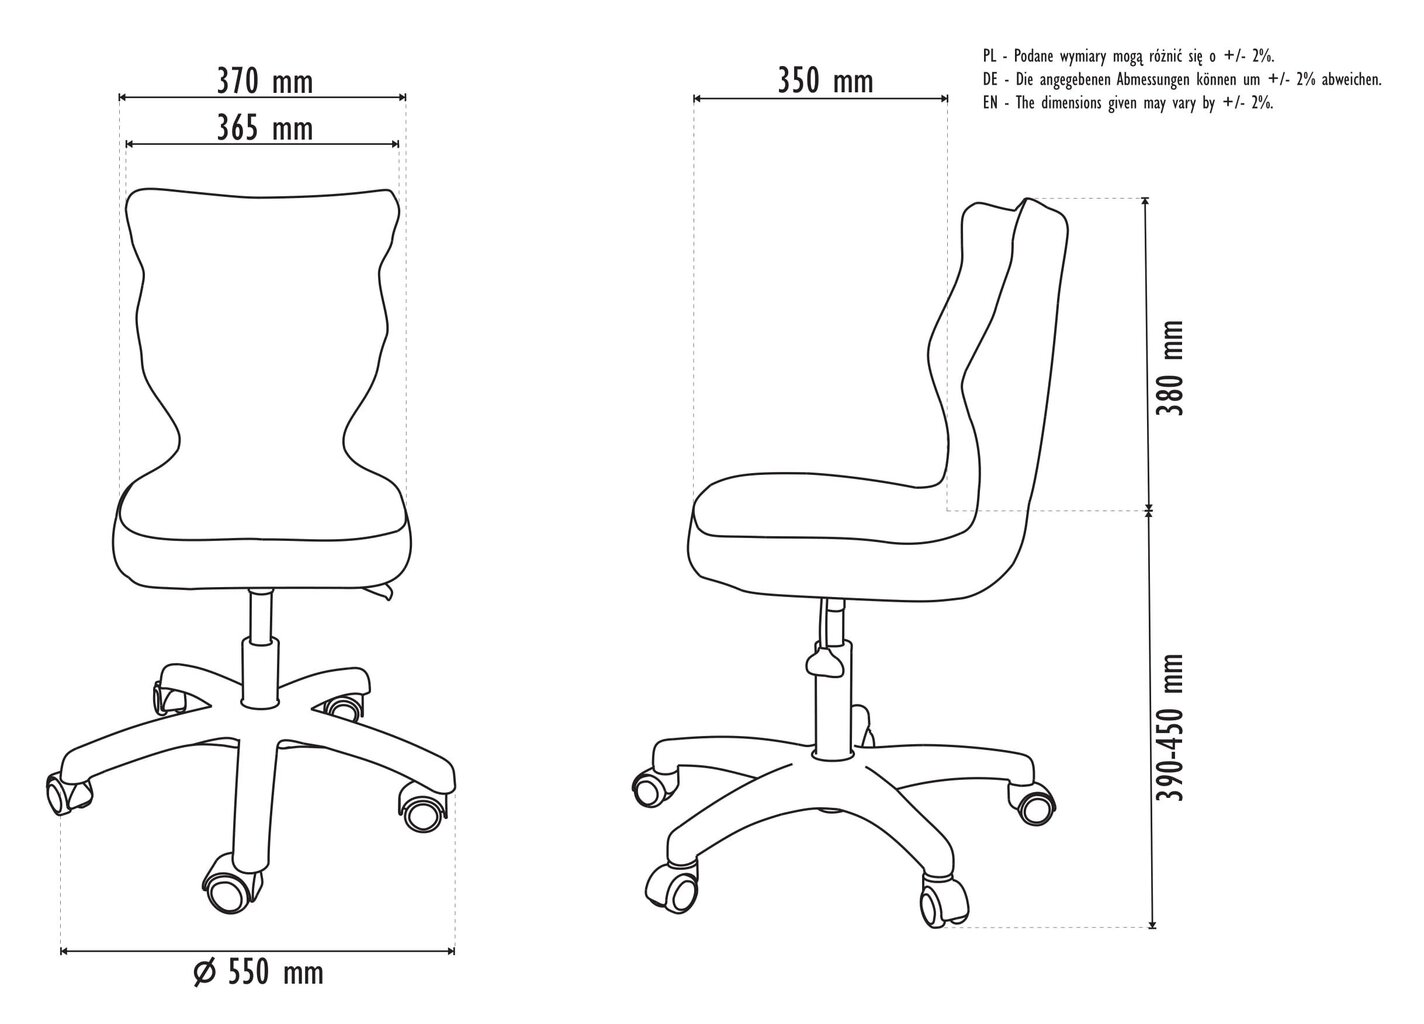 Ergonomiška vaikiška kėdė Entelo Good Chair Petit VS07 4, balta/violetinė kaina ir informacija | Biuro kėdės | pigu.lt